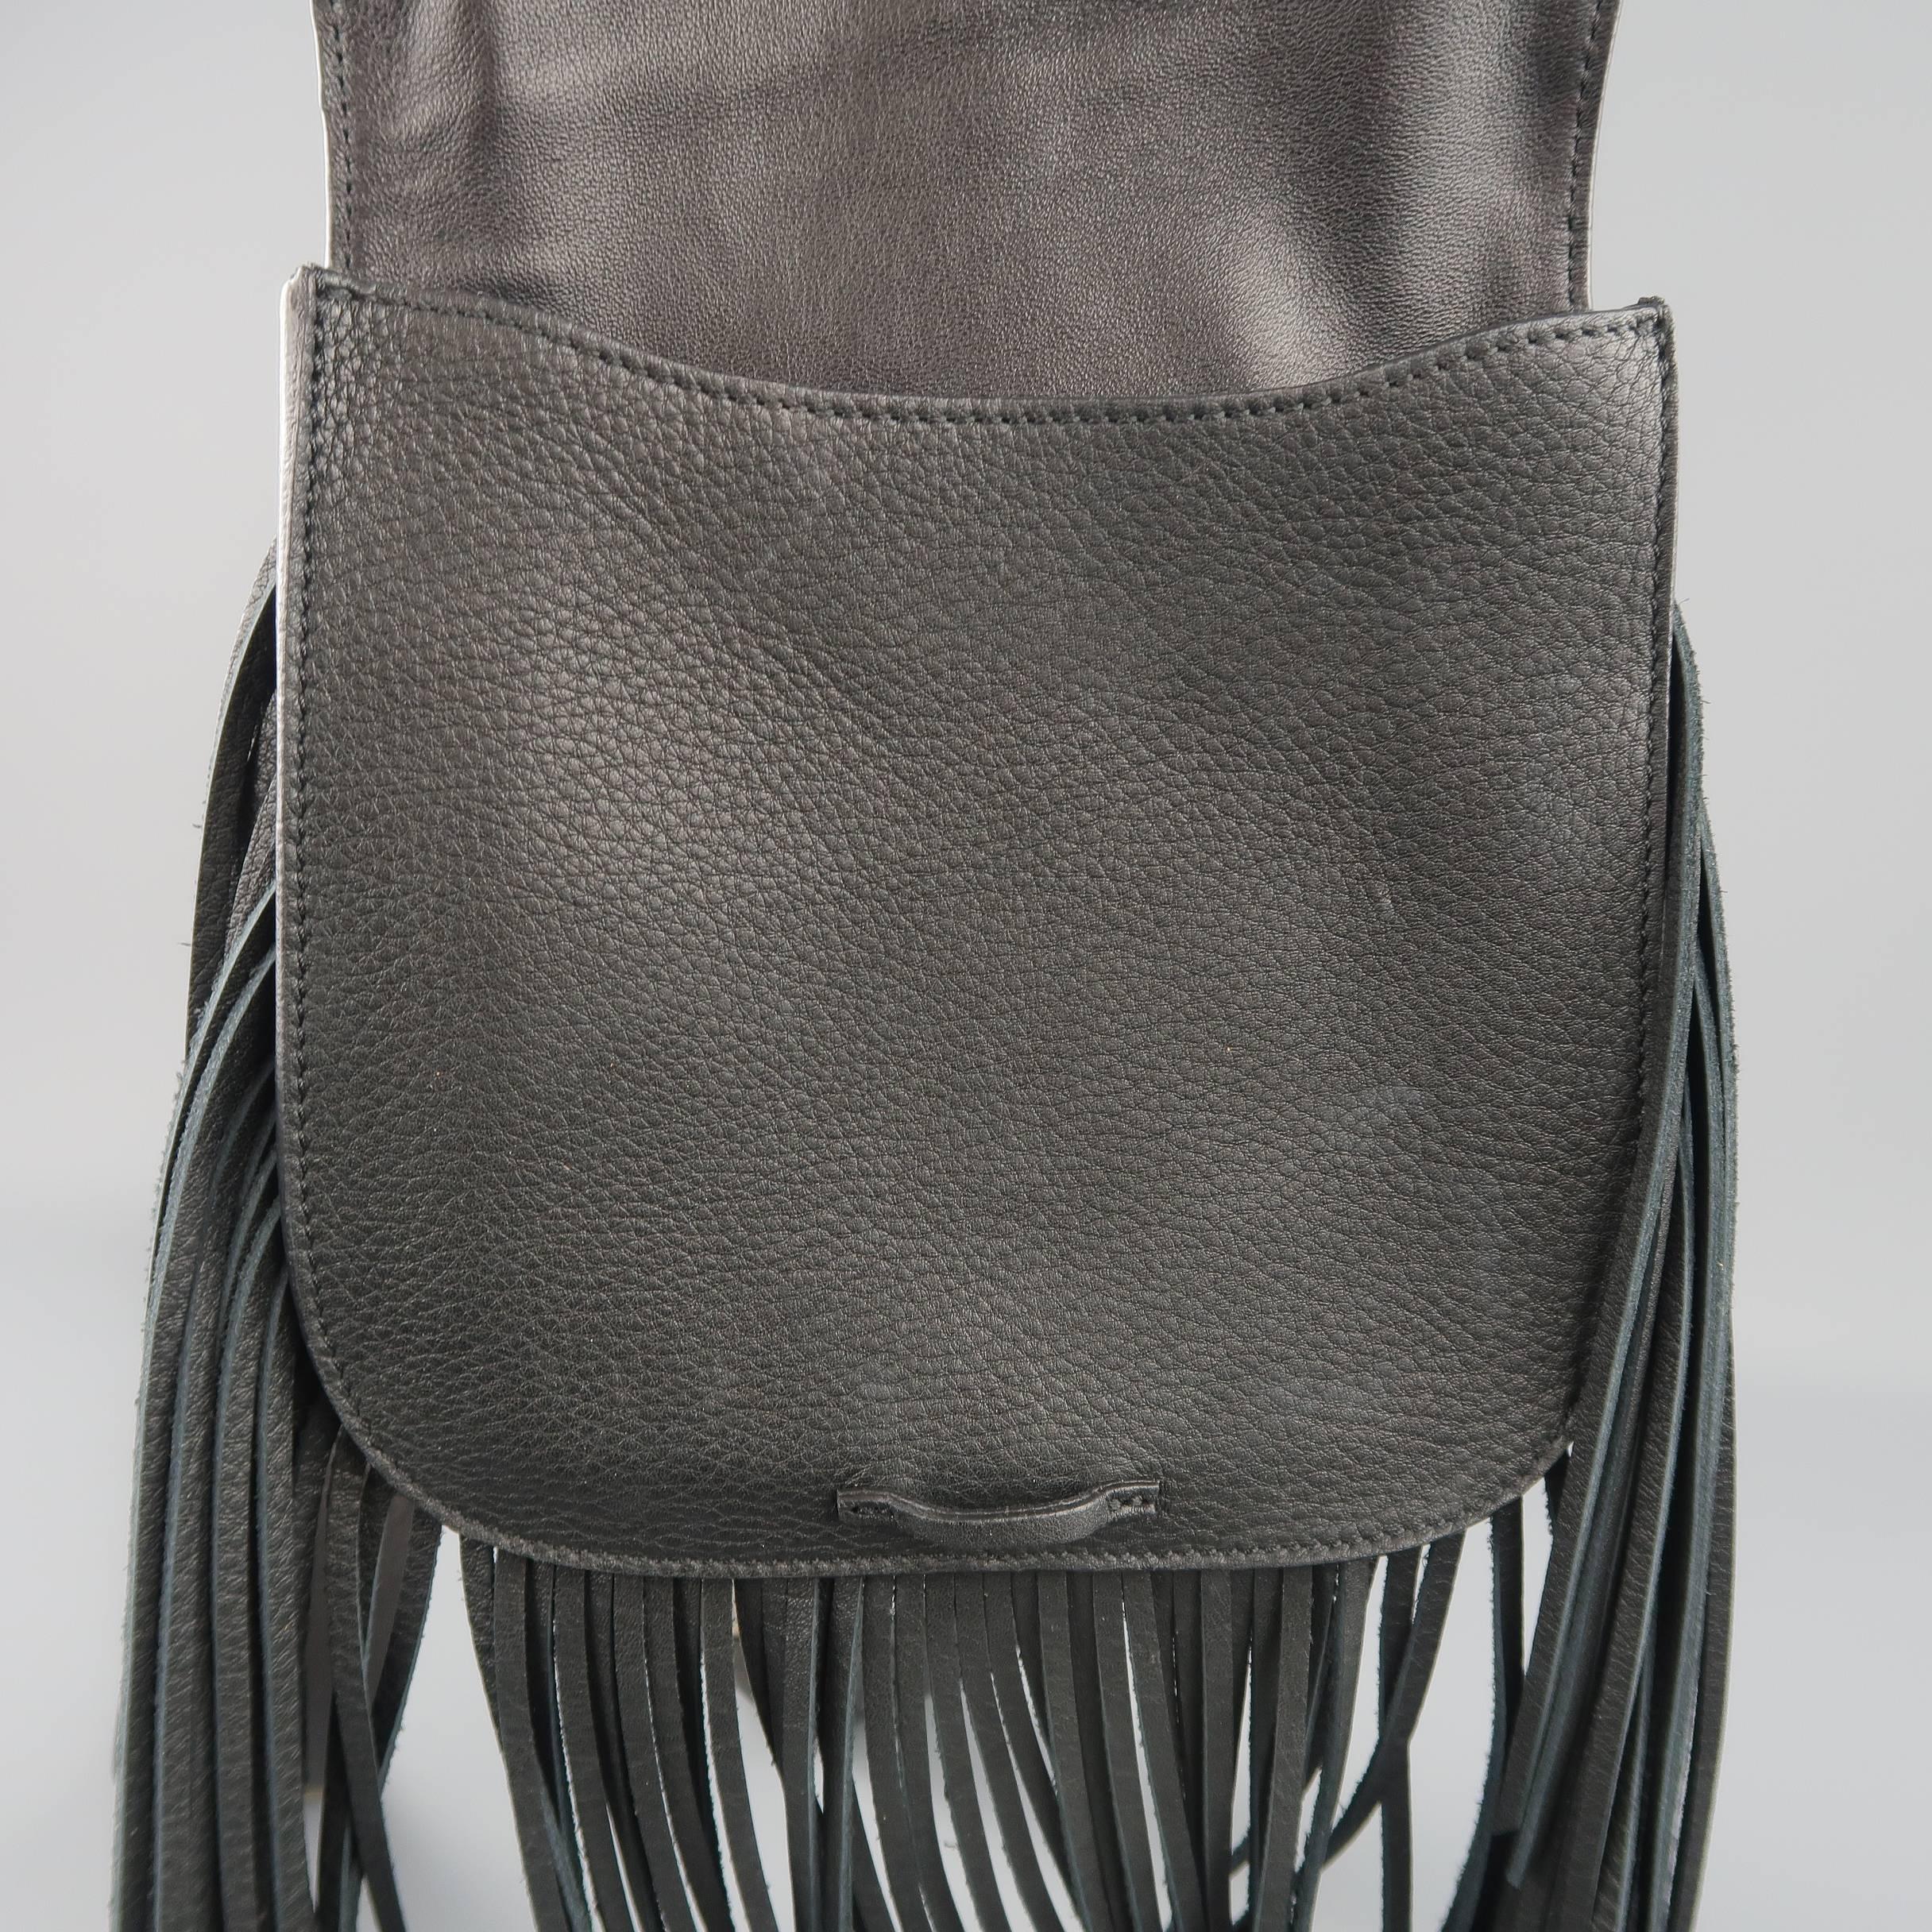 RALPH LAUREN Black Fringe Leather Cross Body RL 1967 Handbag 4